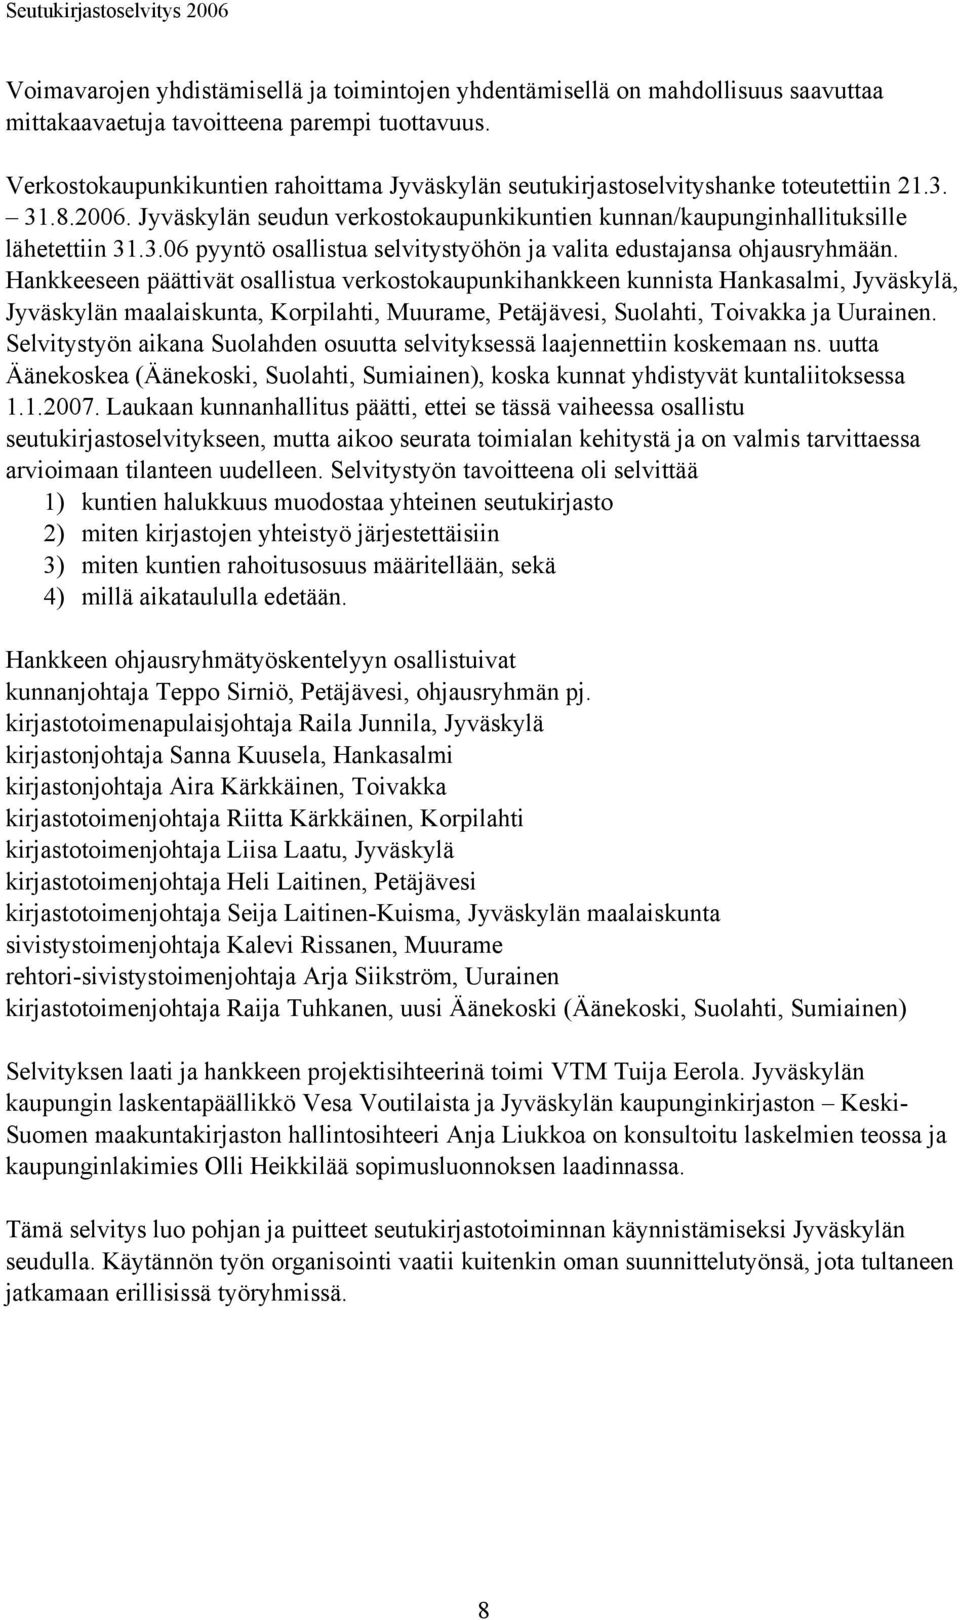 Hankkeeseen päättivät osallistua verkostokaupunkihankkeen kunnista Hankasalmi, Jyväskylä, Jyväskylän maalaiskunta, Korpilahti, Muurame, Petäjävesi, Suolahti, Toivakka ja Uurainen.